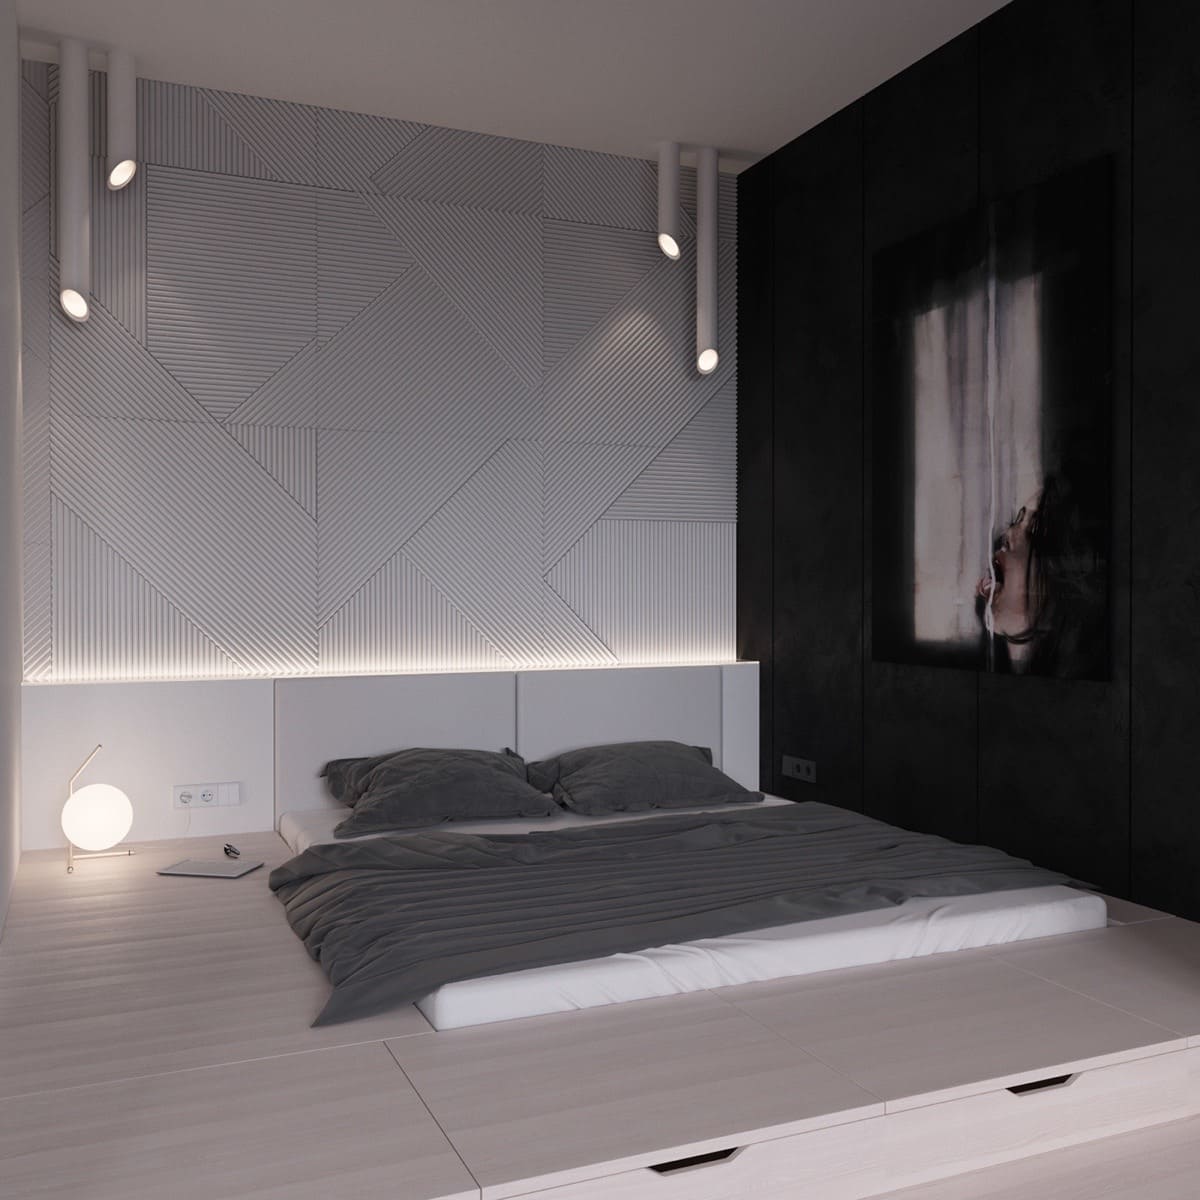 cách thiết kế phòng ngủ đen trắng